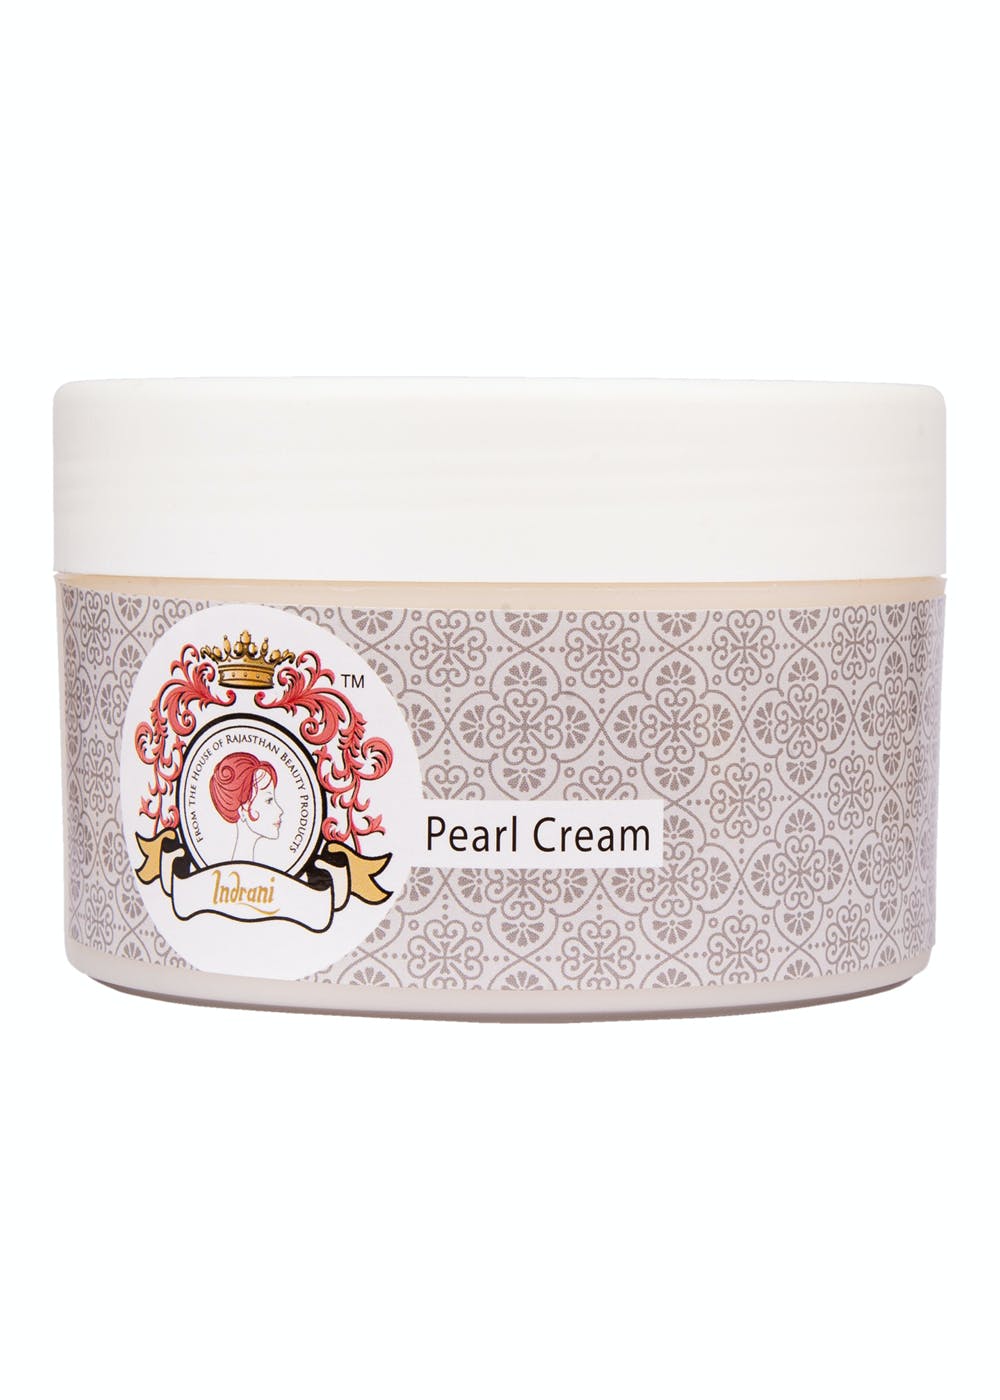 Pearl Cream - 300gm